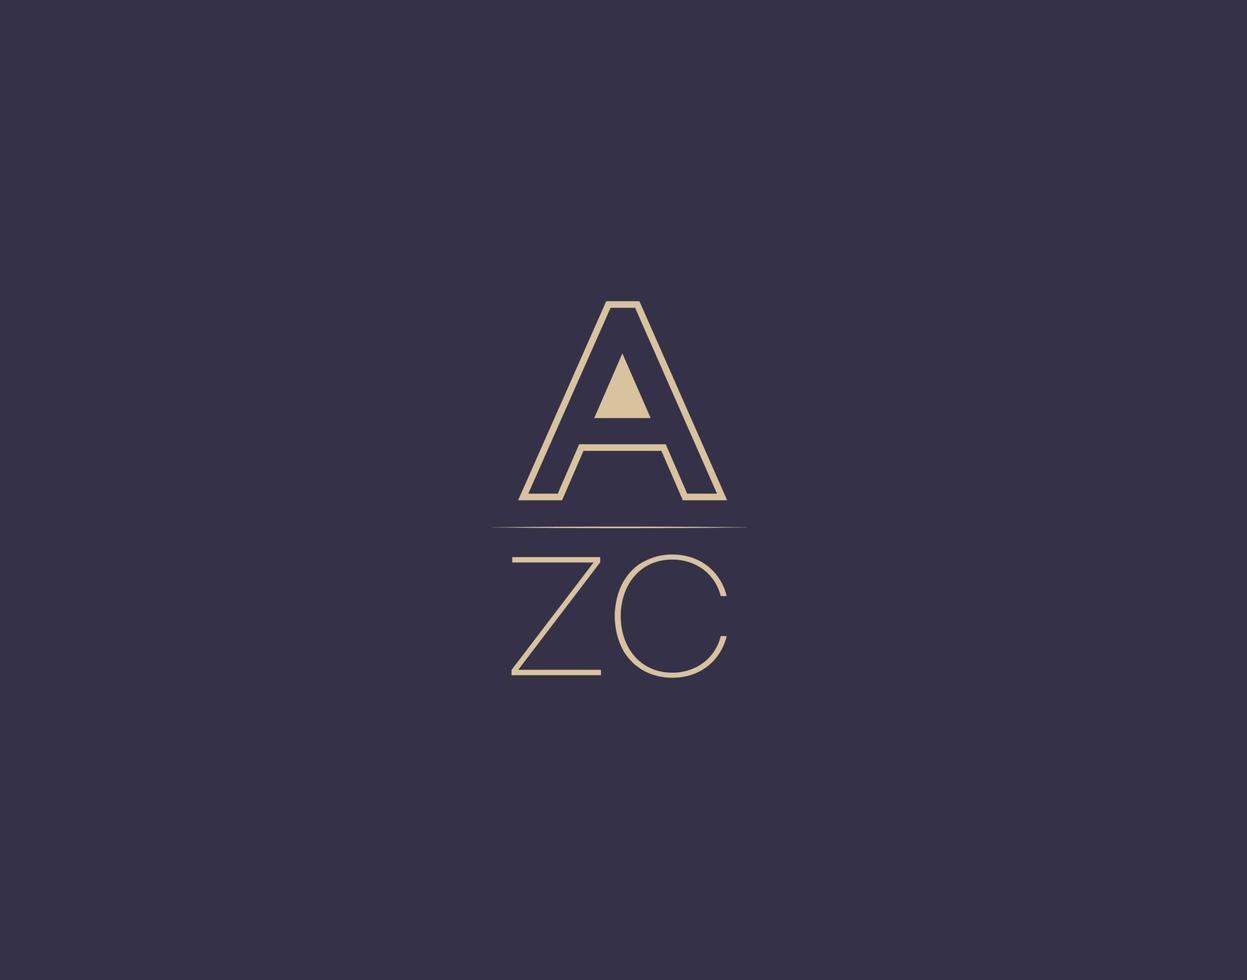 azc-Buchstaben-Logo-Design moderne minimalistische Vektorbilder vektor